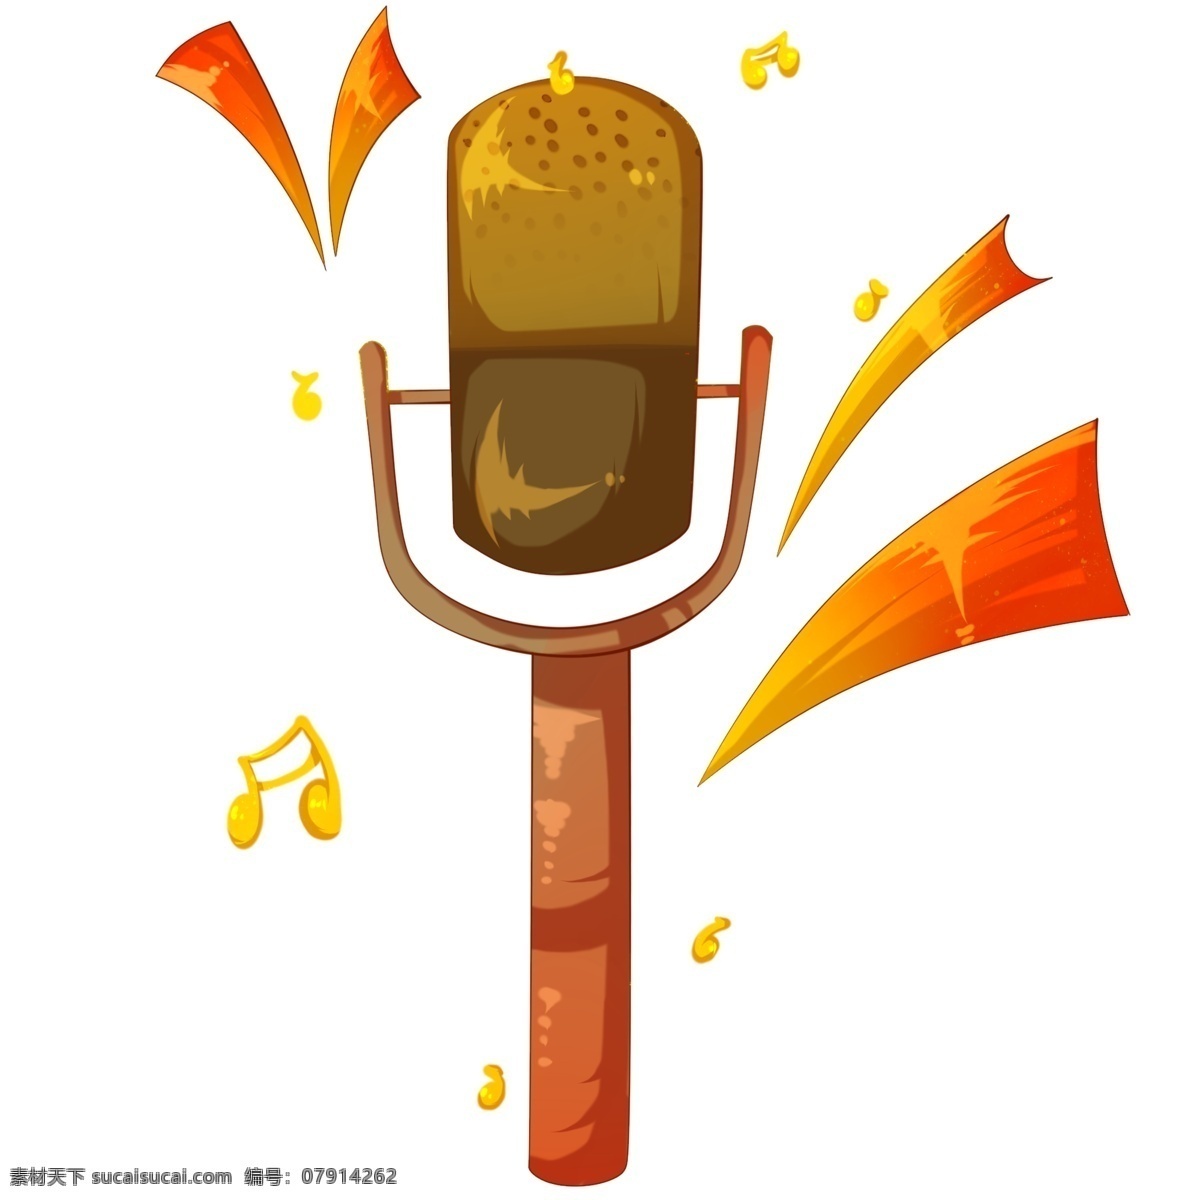 音乐 传声筒 话筒 插画 古老的话筒 卡通插画 音乐插画 音乐演奏 音乐表演 音乐乐器 金色的音符